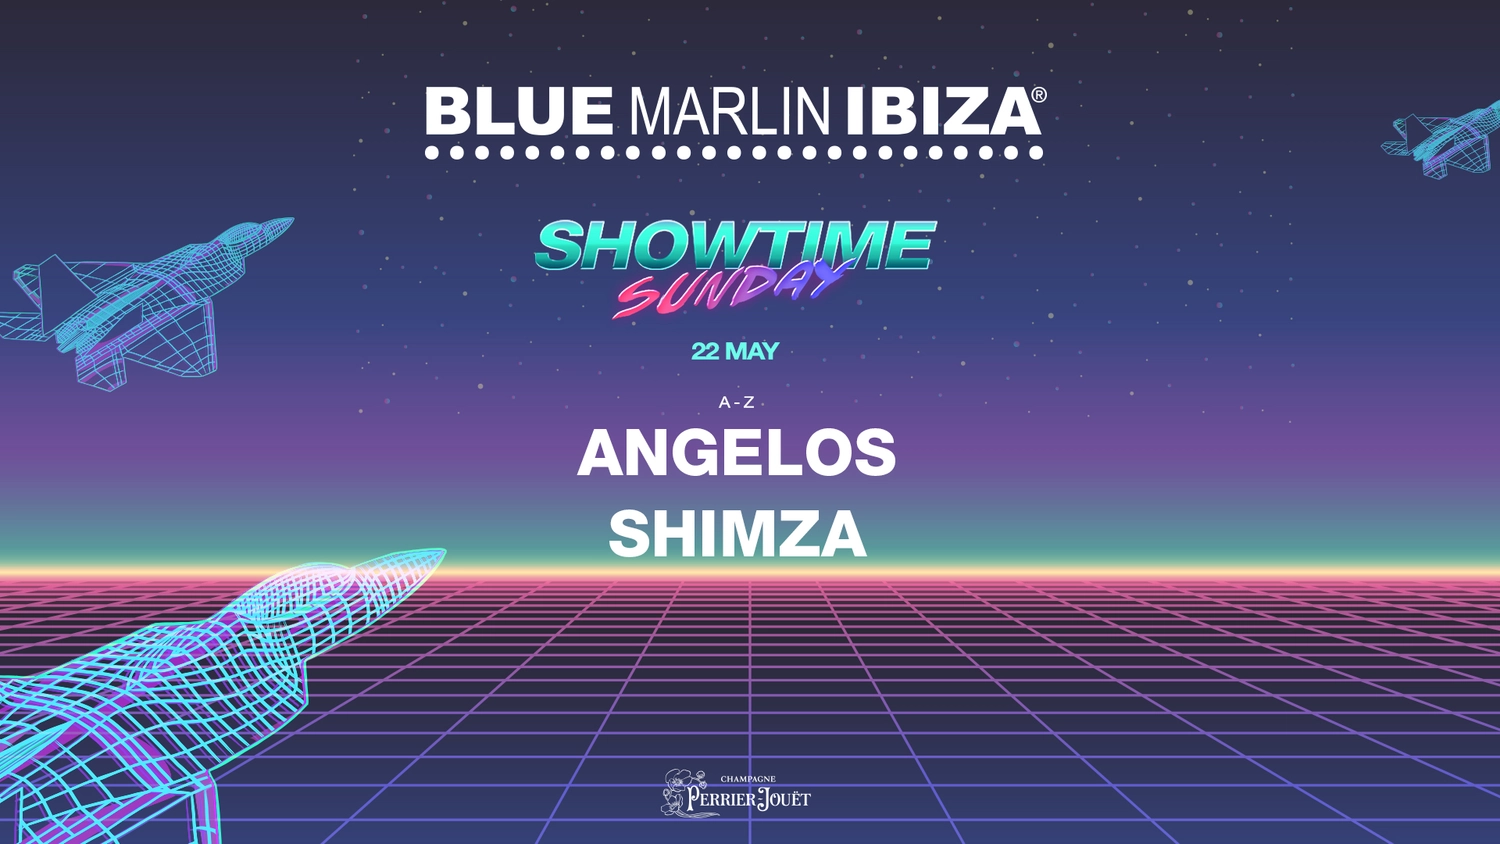 showtime-sunday-blue-marlin-ibiza